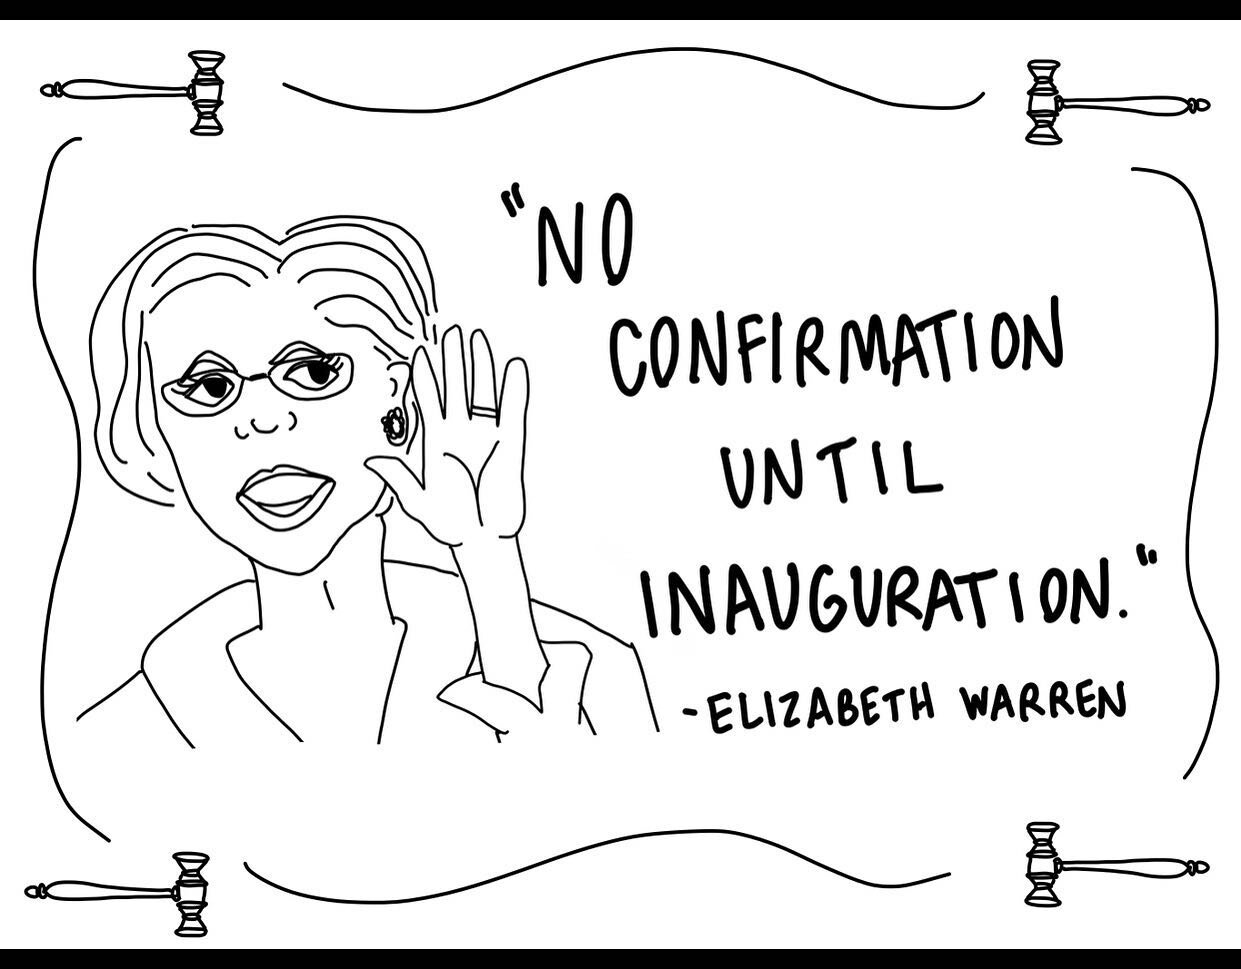 &ldquo;No confirmation until inauguration!&rdquo; -Elizabeth Warren 

🇺🇸
🇺🇸
🇺🇸
🇺🇸

#vote2020 #getoutthevote #getoutthevote2020  #marvinandtaco #postcardswithapurpose #votelikeyourlifedependsonit #changethesystem #votelikeyougiveadamn #votelik